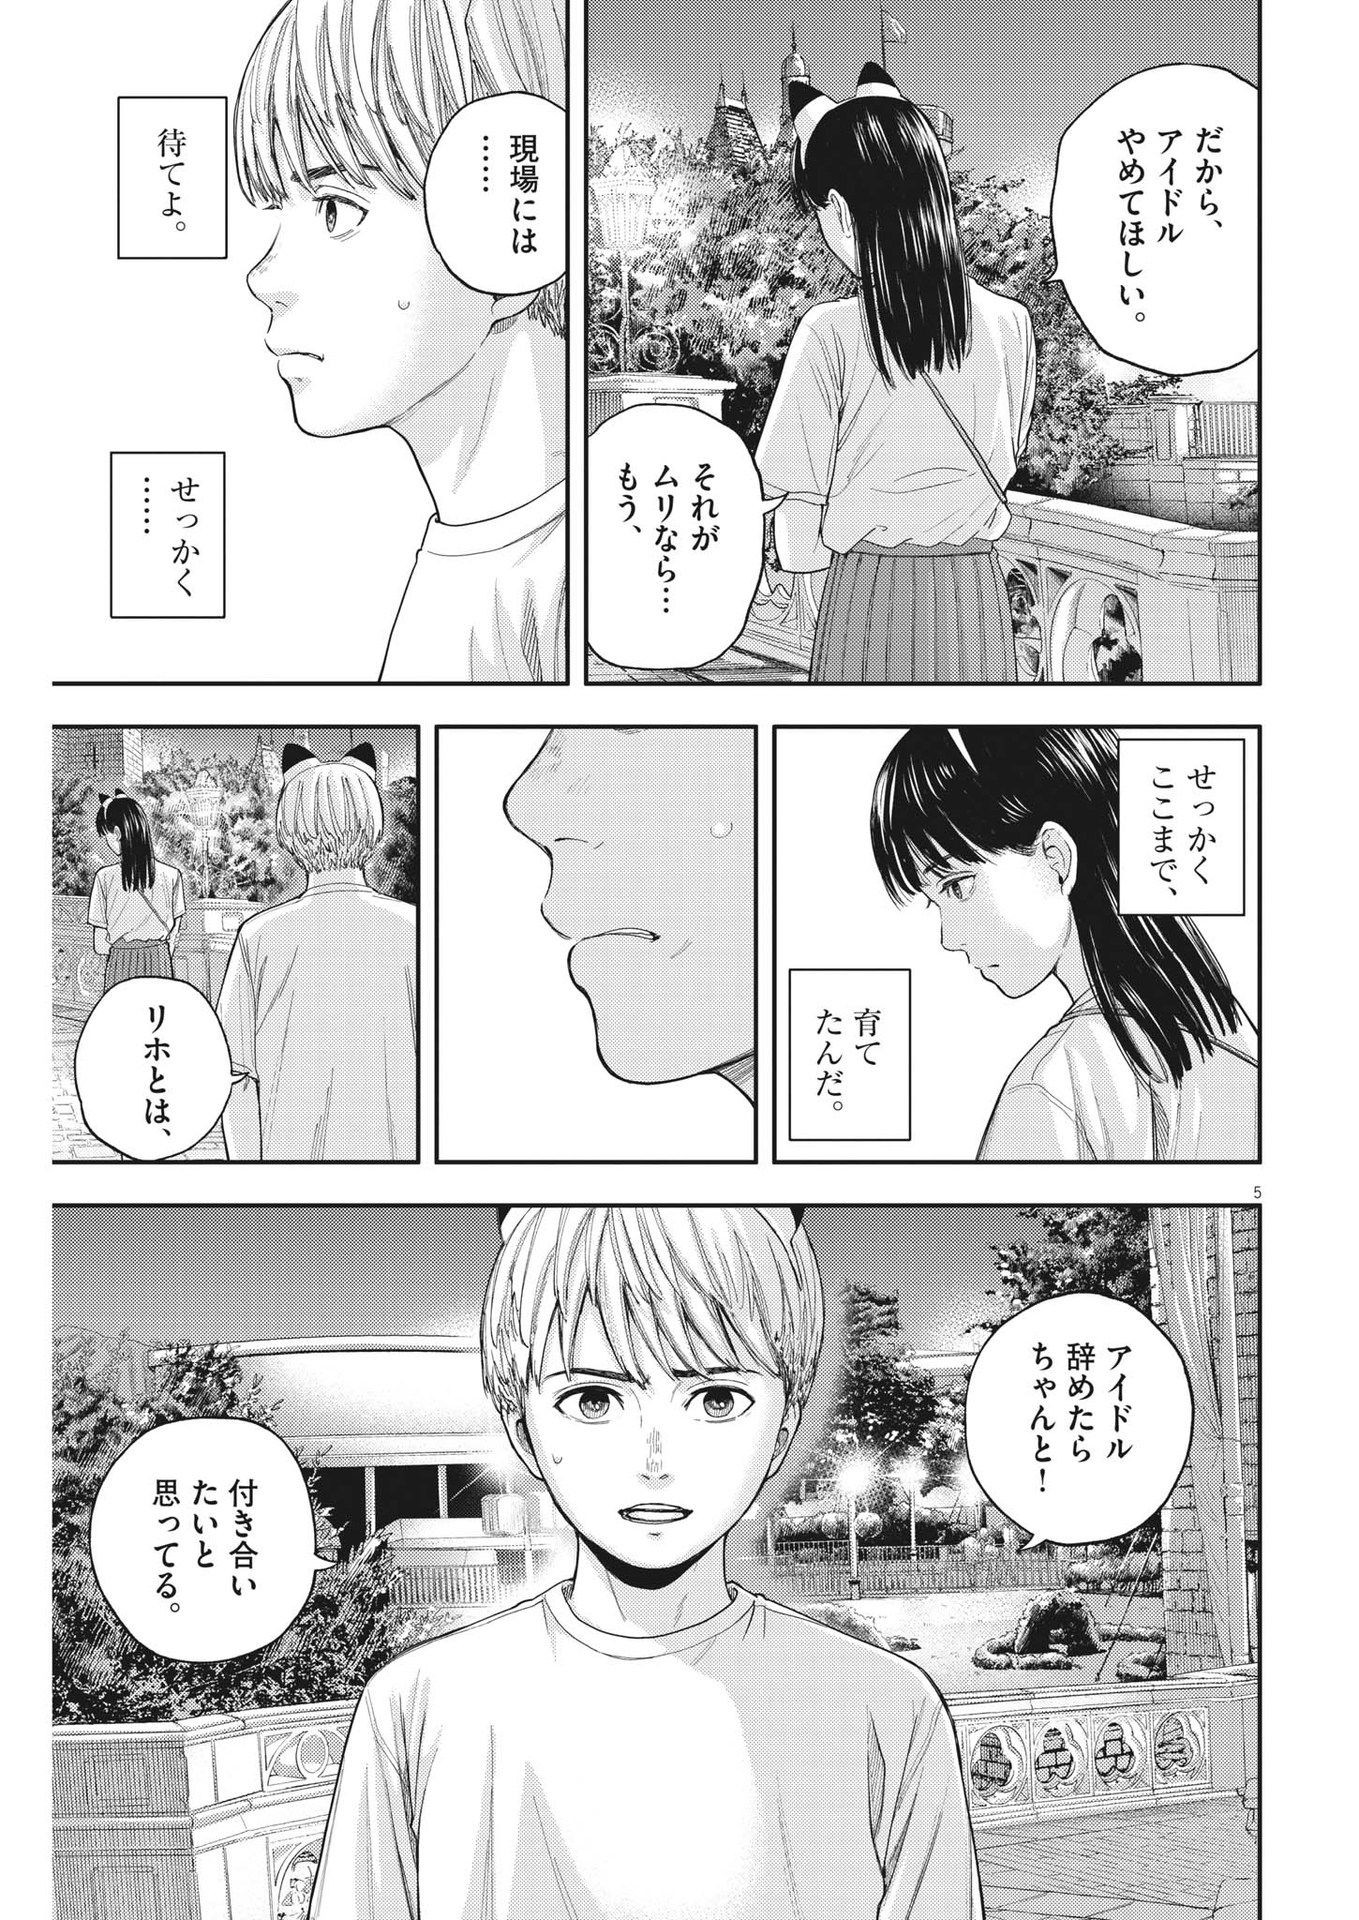 Yumenashi-sensei no Shinroshidou - Chapter 15 - Page 5